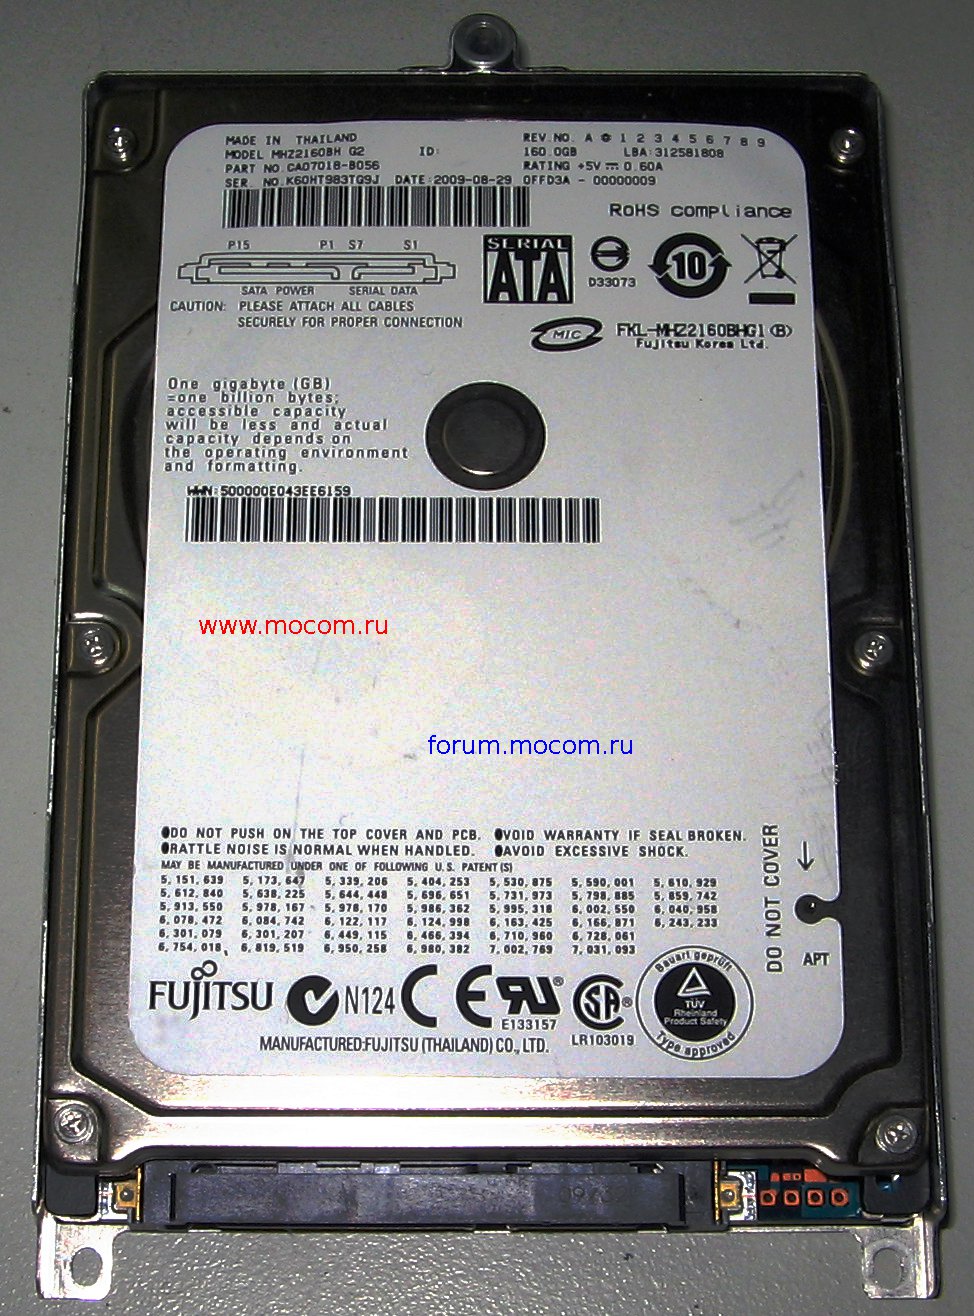   : HDD Fujitsu MHZ2160BH G2, 160GB, SATA